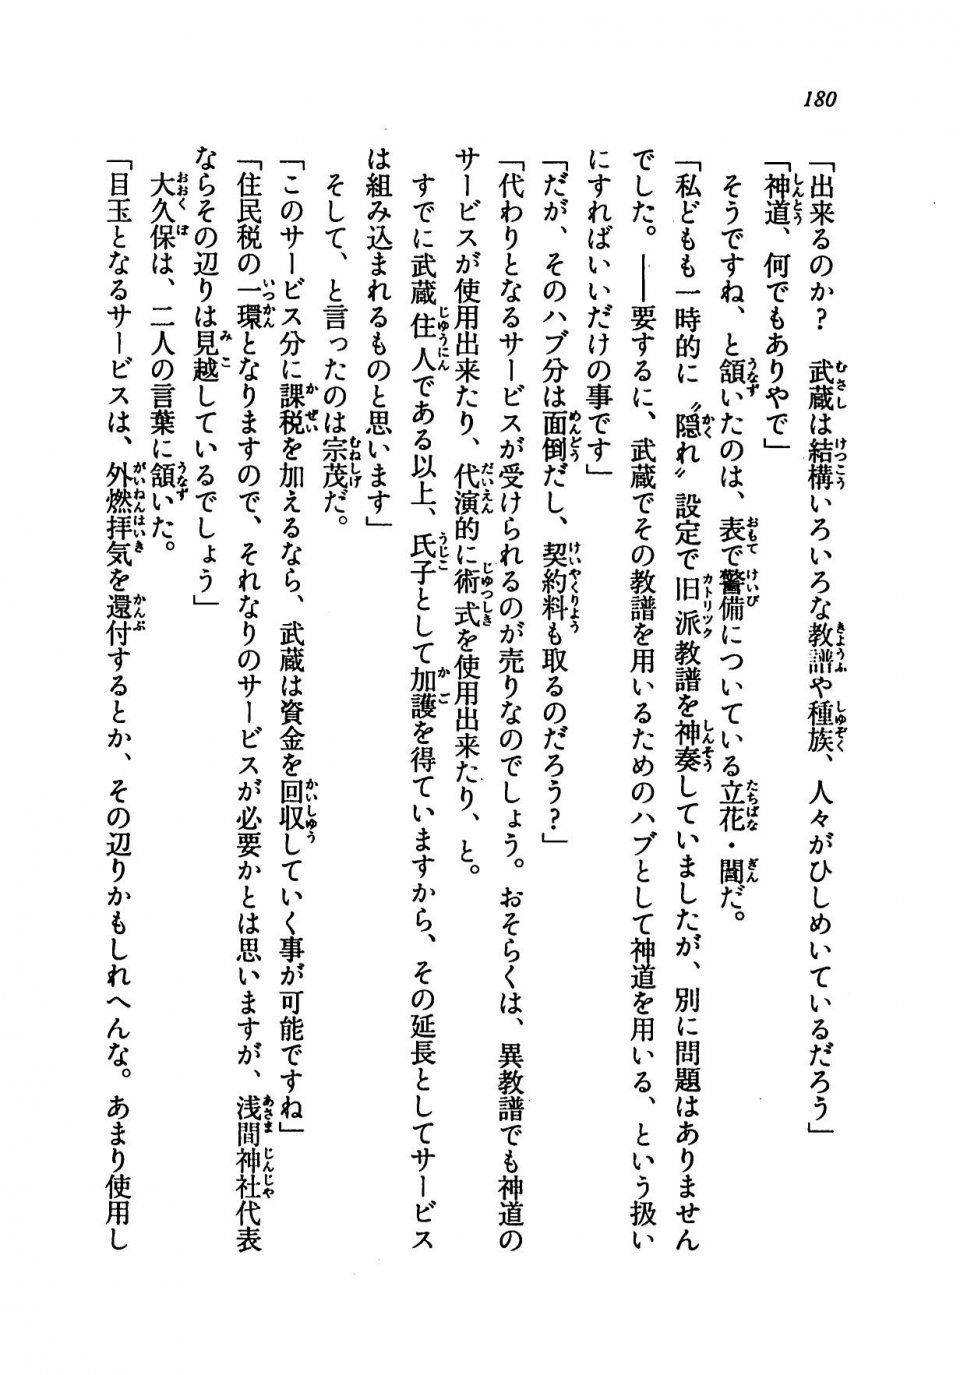 Kyoukai Senjou no Horizon LN Vol 19(8A) - Photo #180